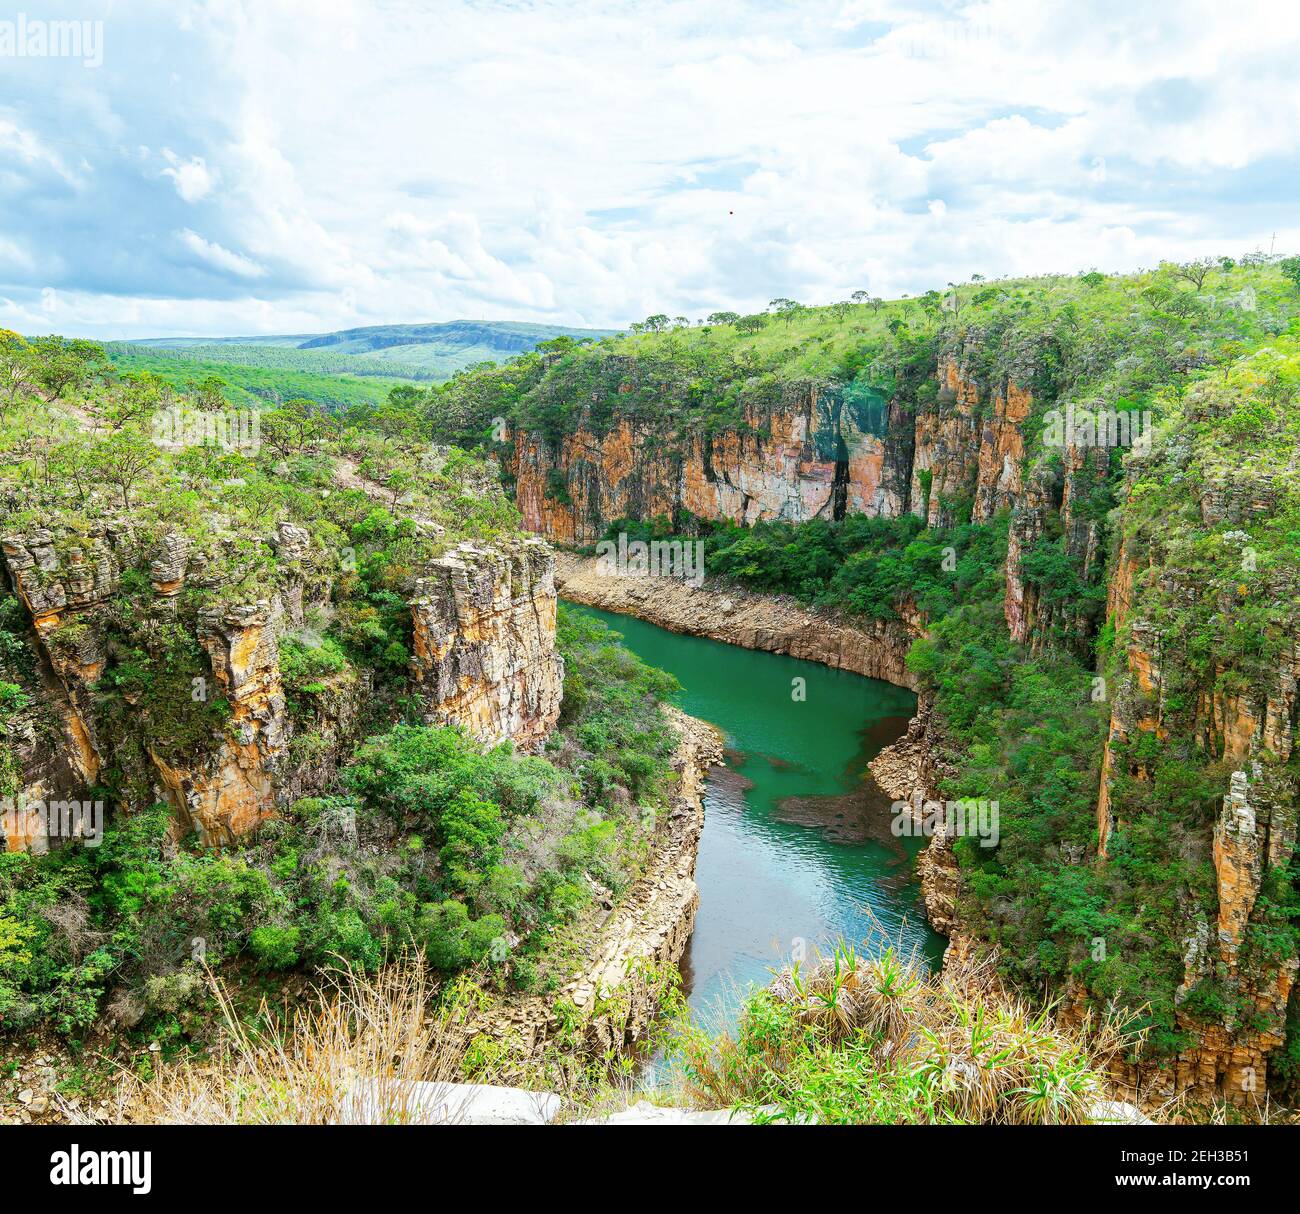 Canyons de Furnas, carte postale de la ville de Capitólio MG Brésil. Magnifique paysage panoramique de l'éco-tourisme de l'état de Minas Gerais. Belle eau verte o Banque D'Images